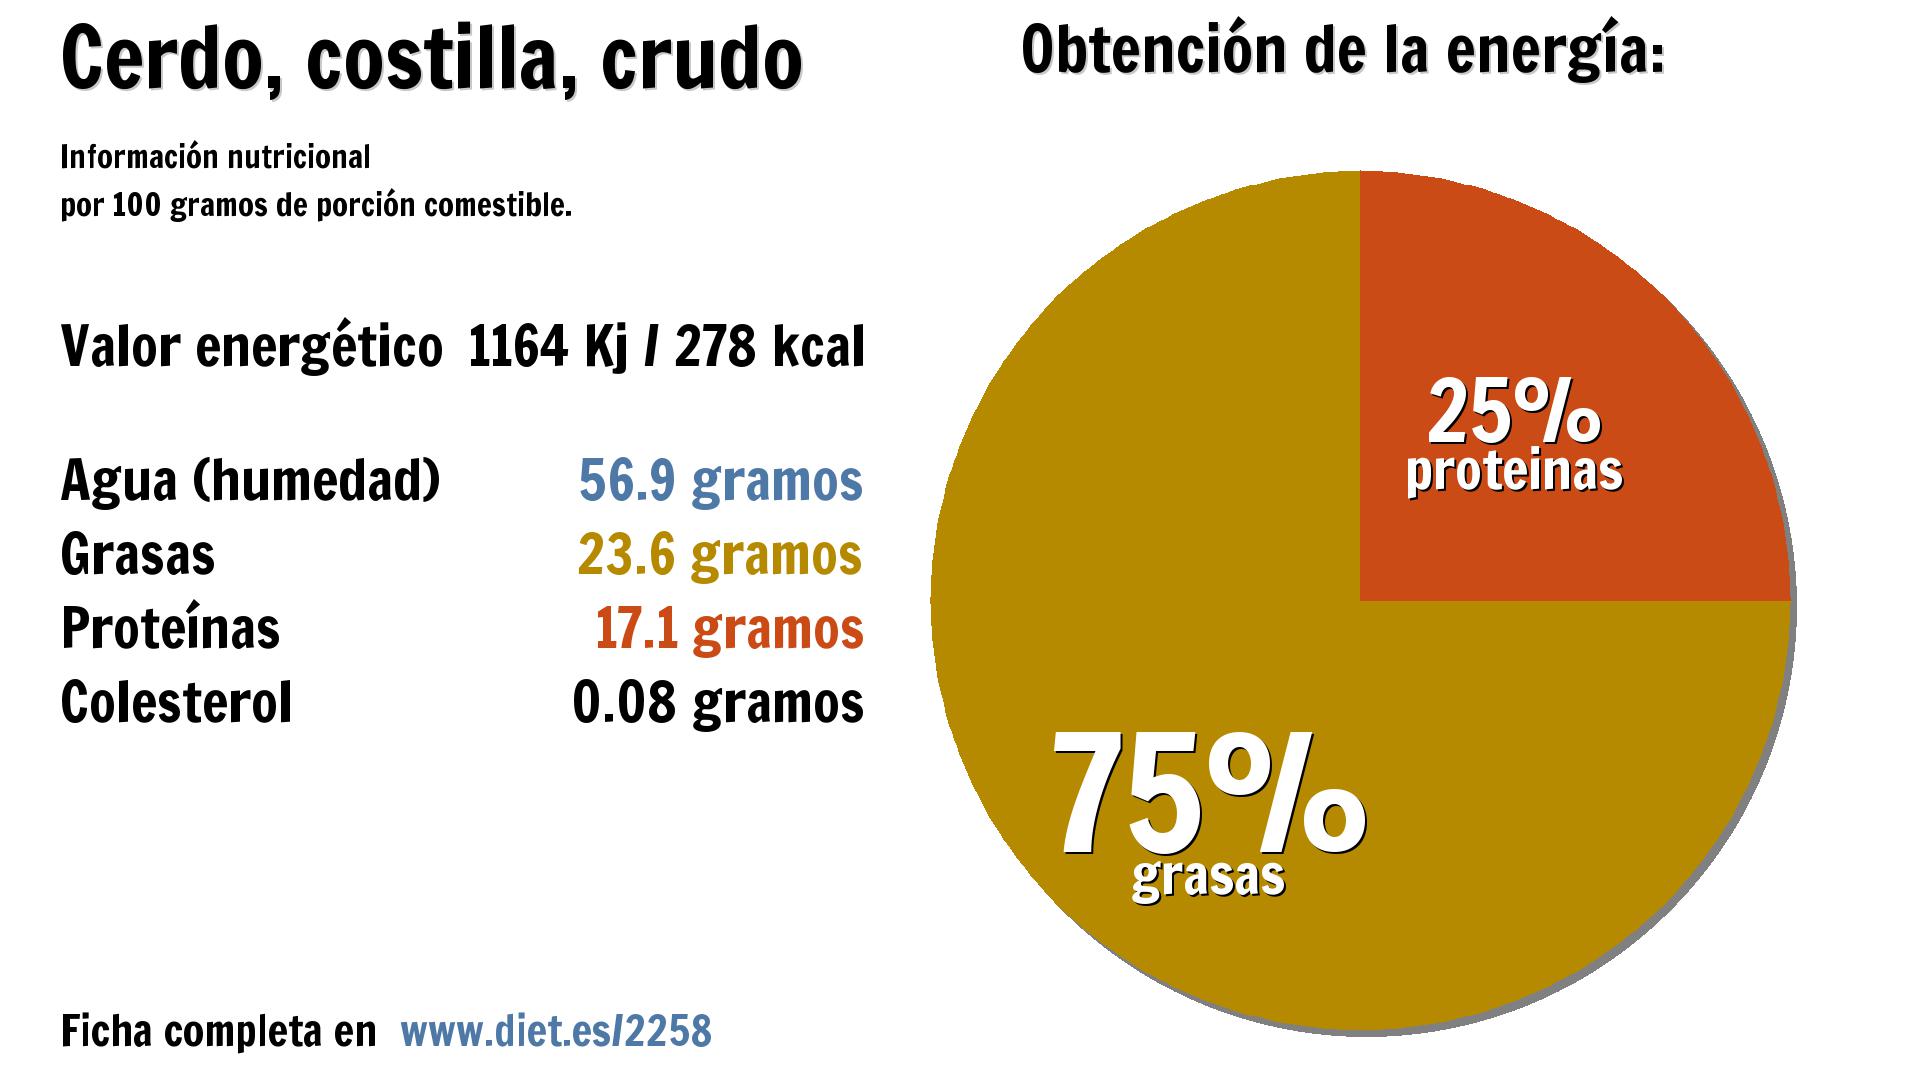 Cerdo, costilla, crudo: energía 1164 Kj, agua 57 g., grasas 24 g. y proteínas 17 g.